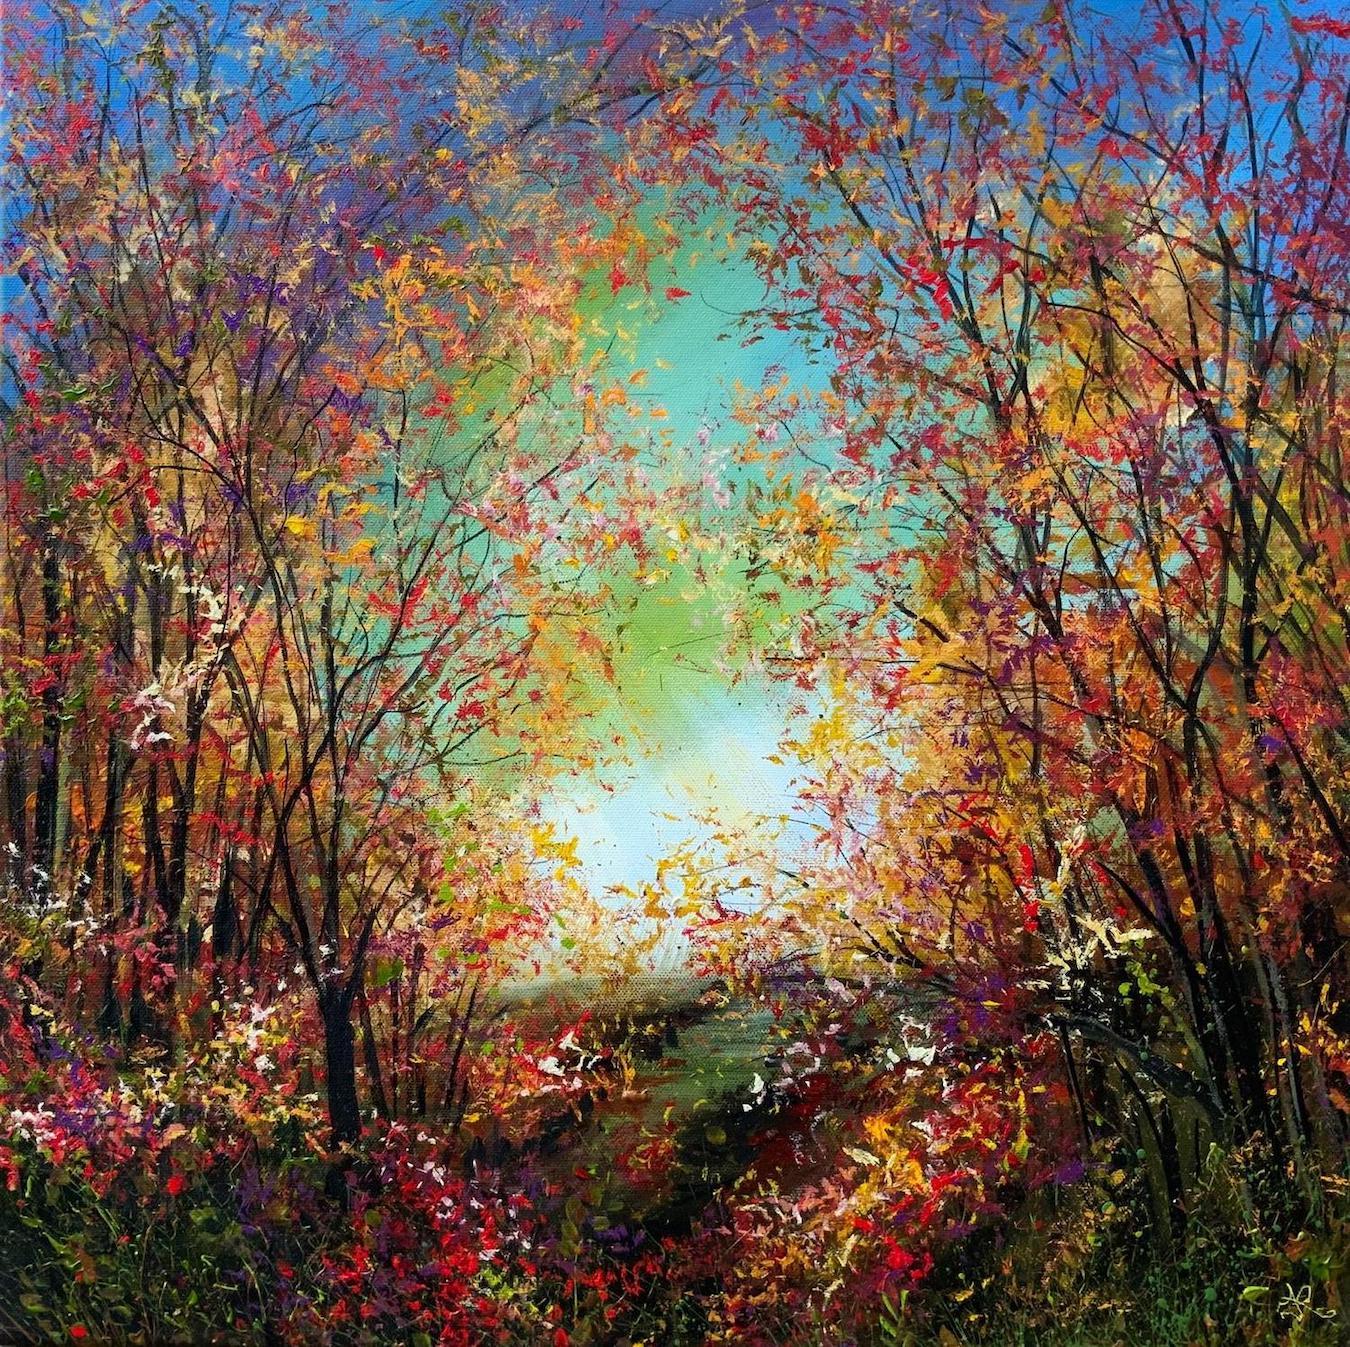 Jan Rogers  Landscape Painting - Autumn Glory Fairy Glen by Jan Rogers, Landscape art, Original painting, Floral 